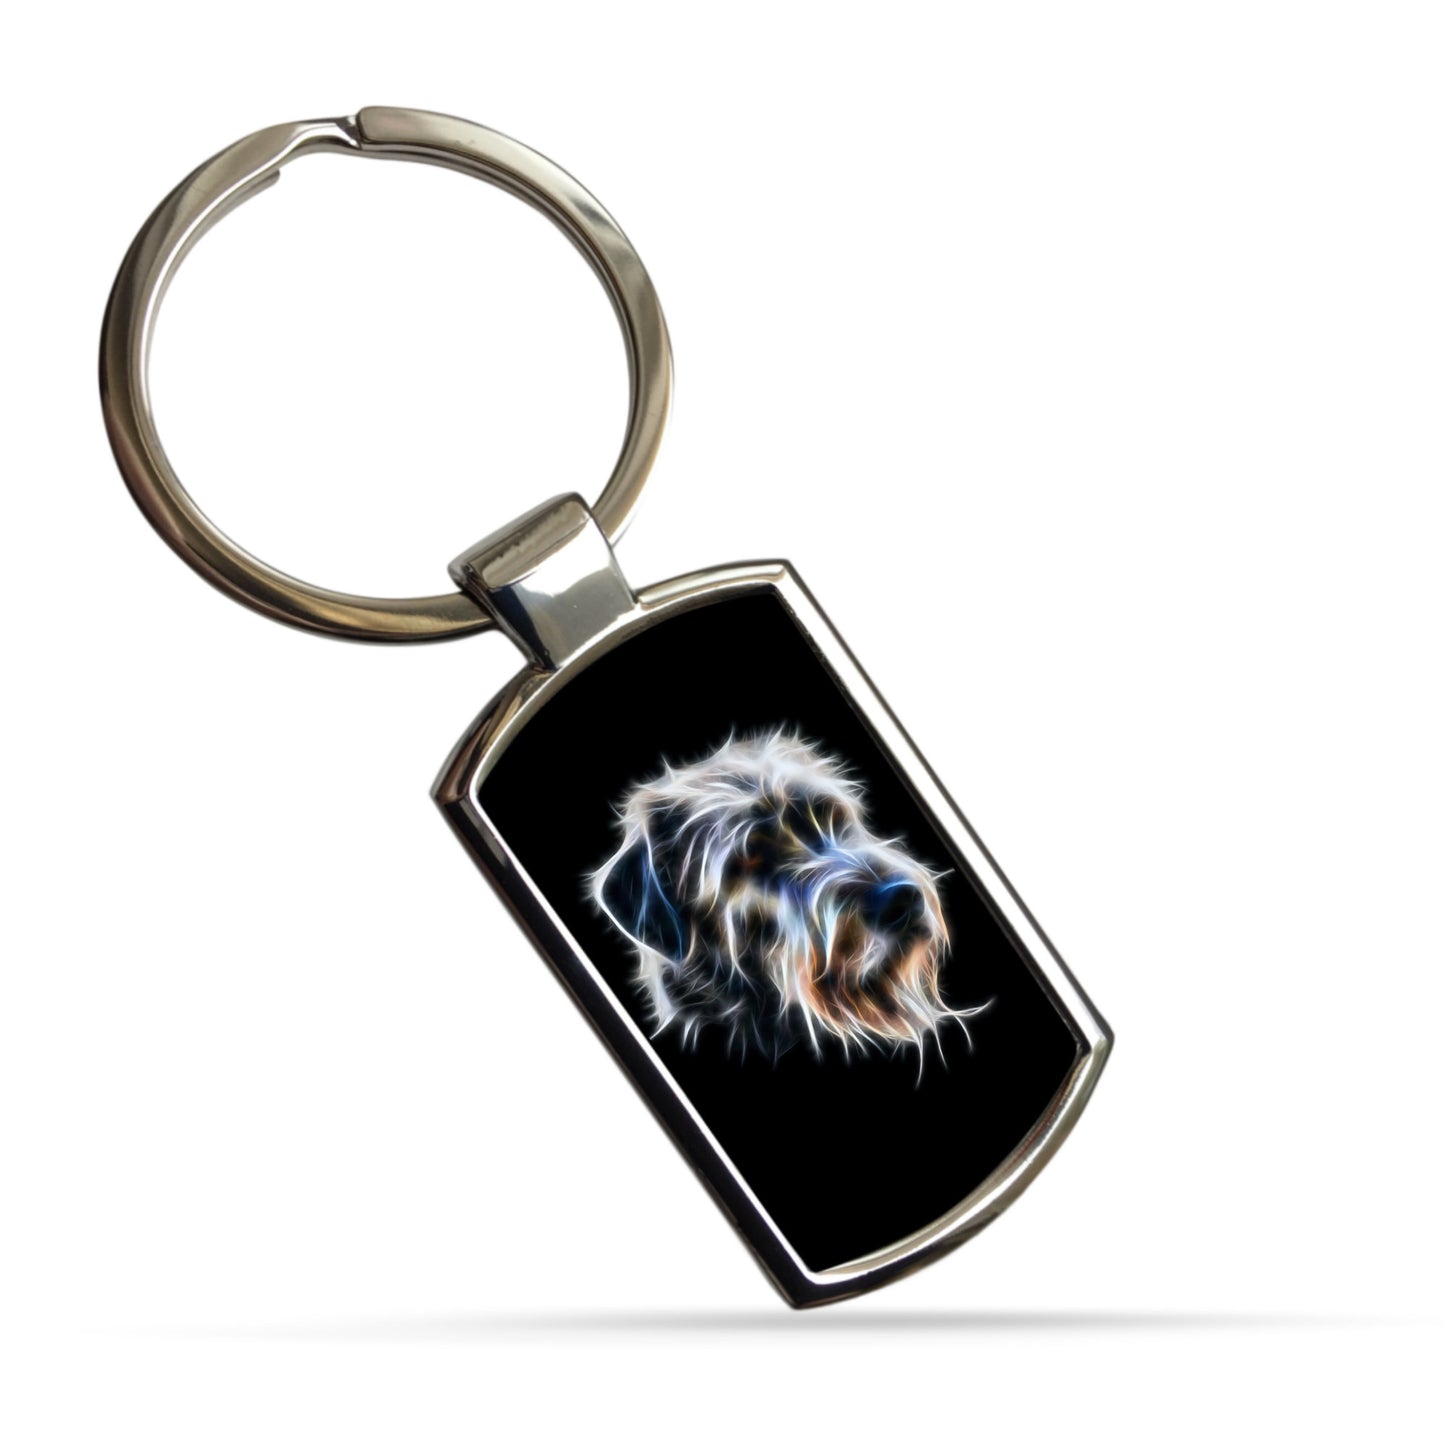 Irish Wolfhound Dog Keychain with Stunning Fractal Art Design